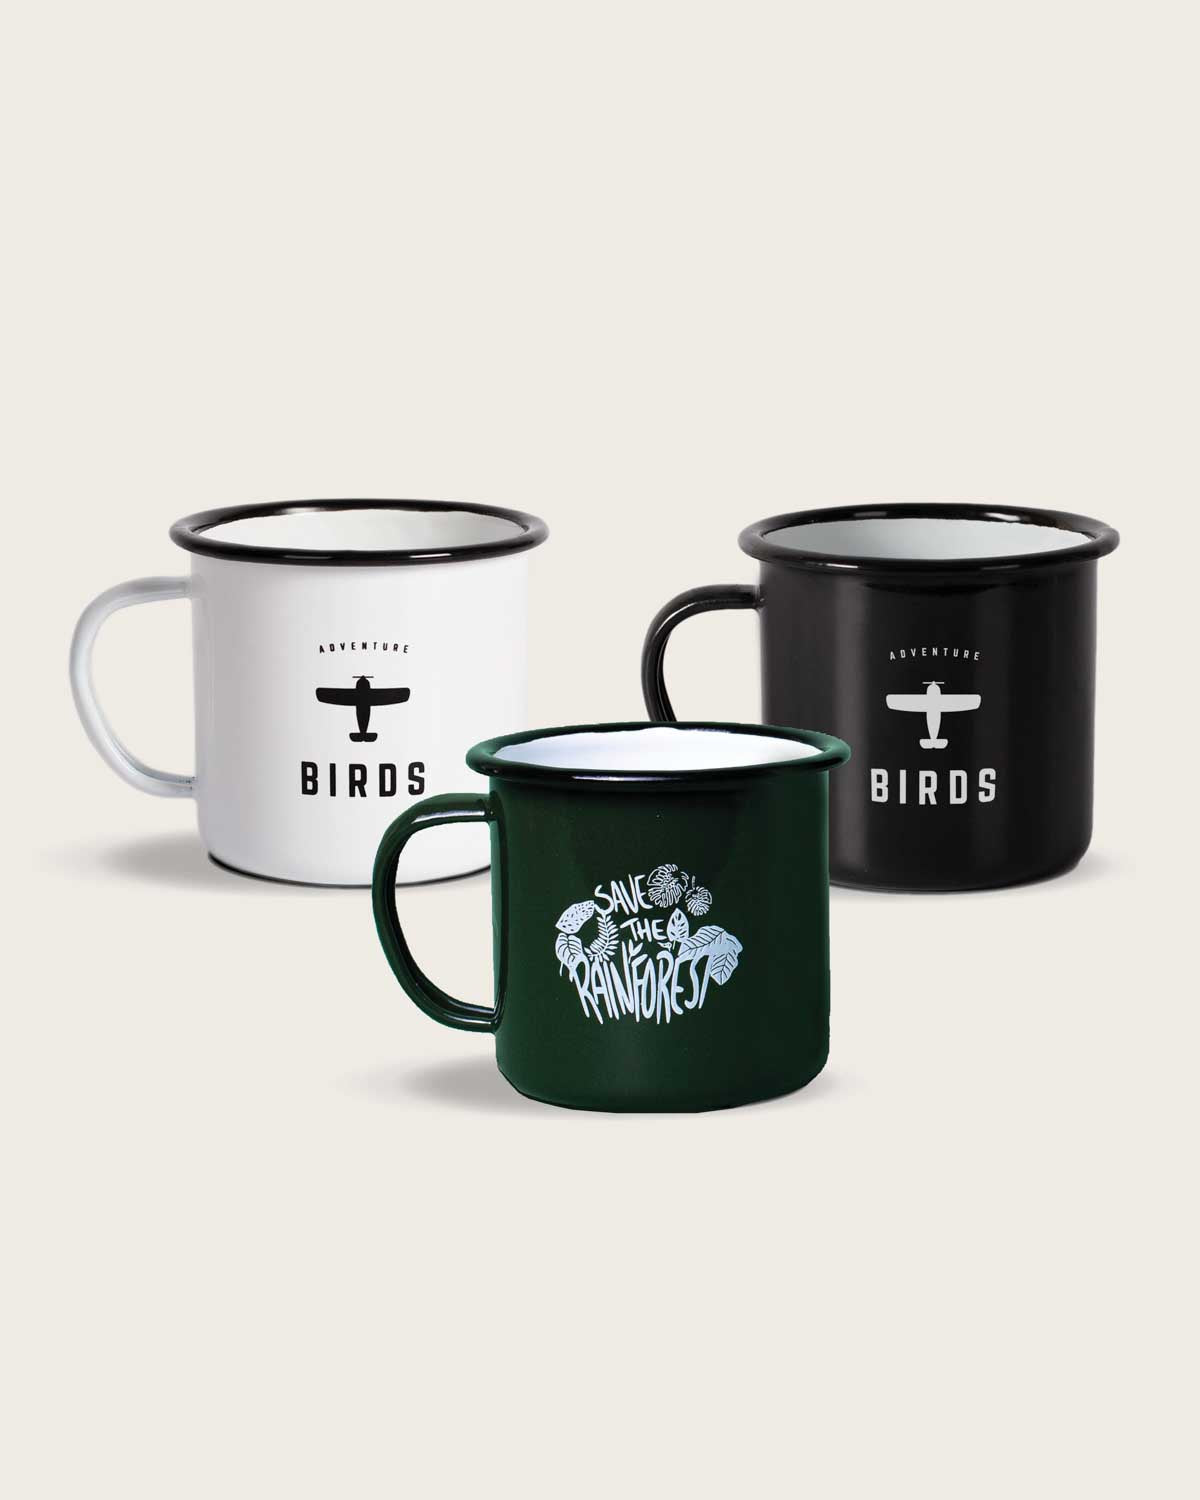 Die drei Camping Tassen von BIRDS, in weiß, schwarz und dunkelgrün. Im dreier Pack als perfektes Start-Up, ideal für Gin Tonic, Kaffee oder deinen Lieblingscocktail.